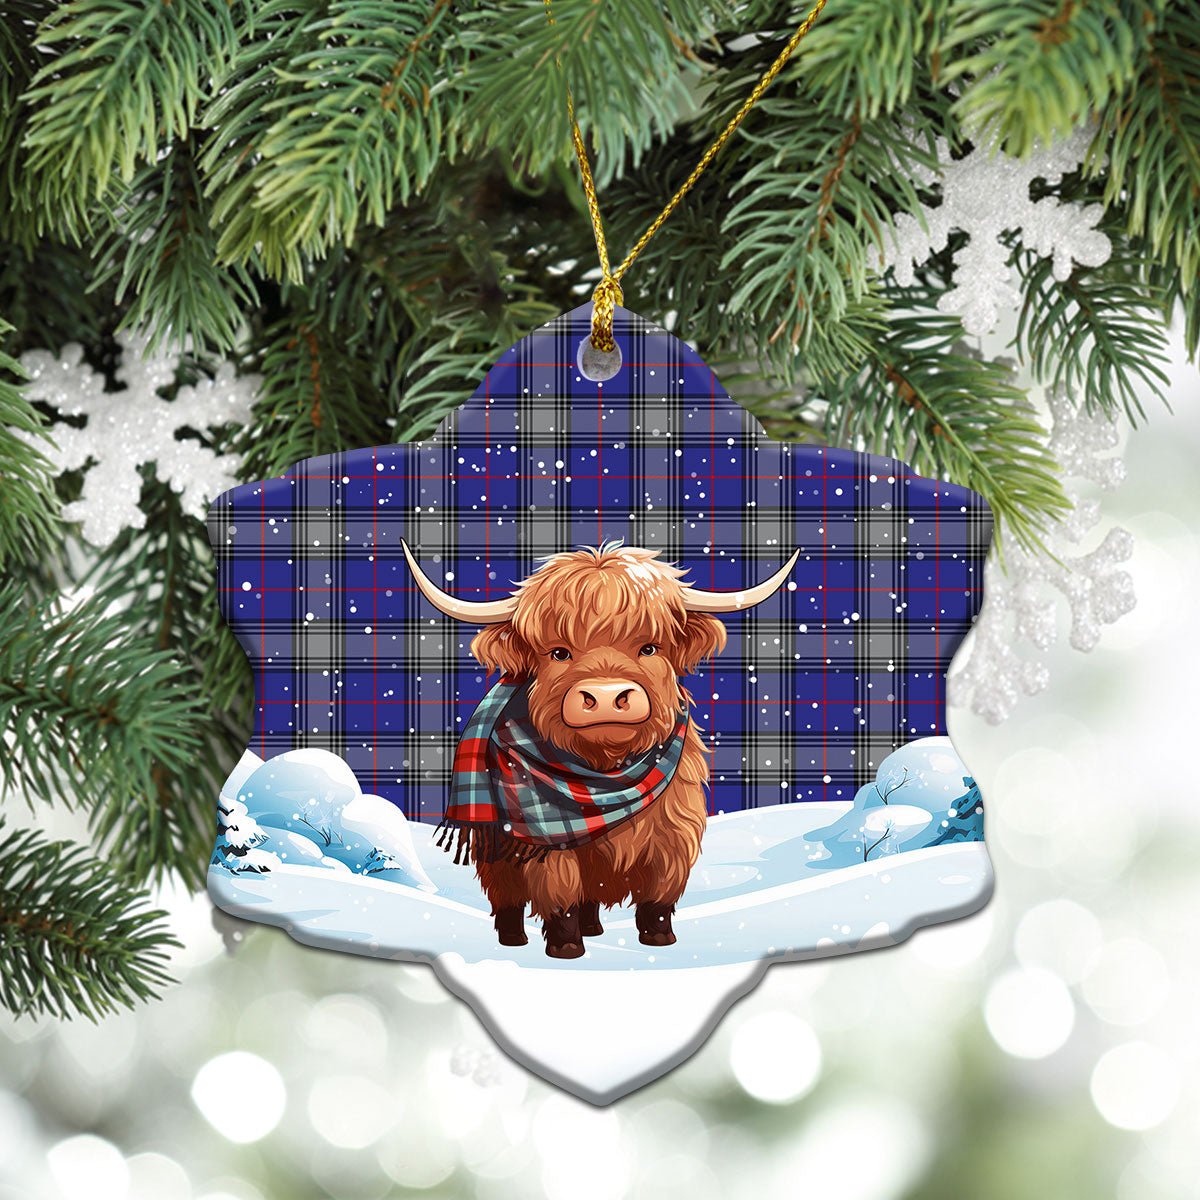 Kinnaird Tartan Christmas Ceramic Ornament - Highland Cows Snow Style